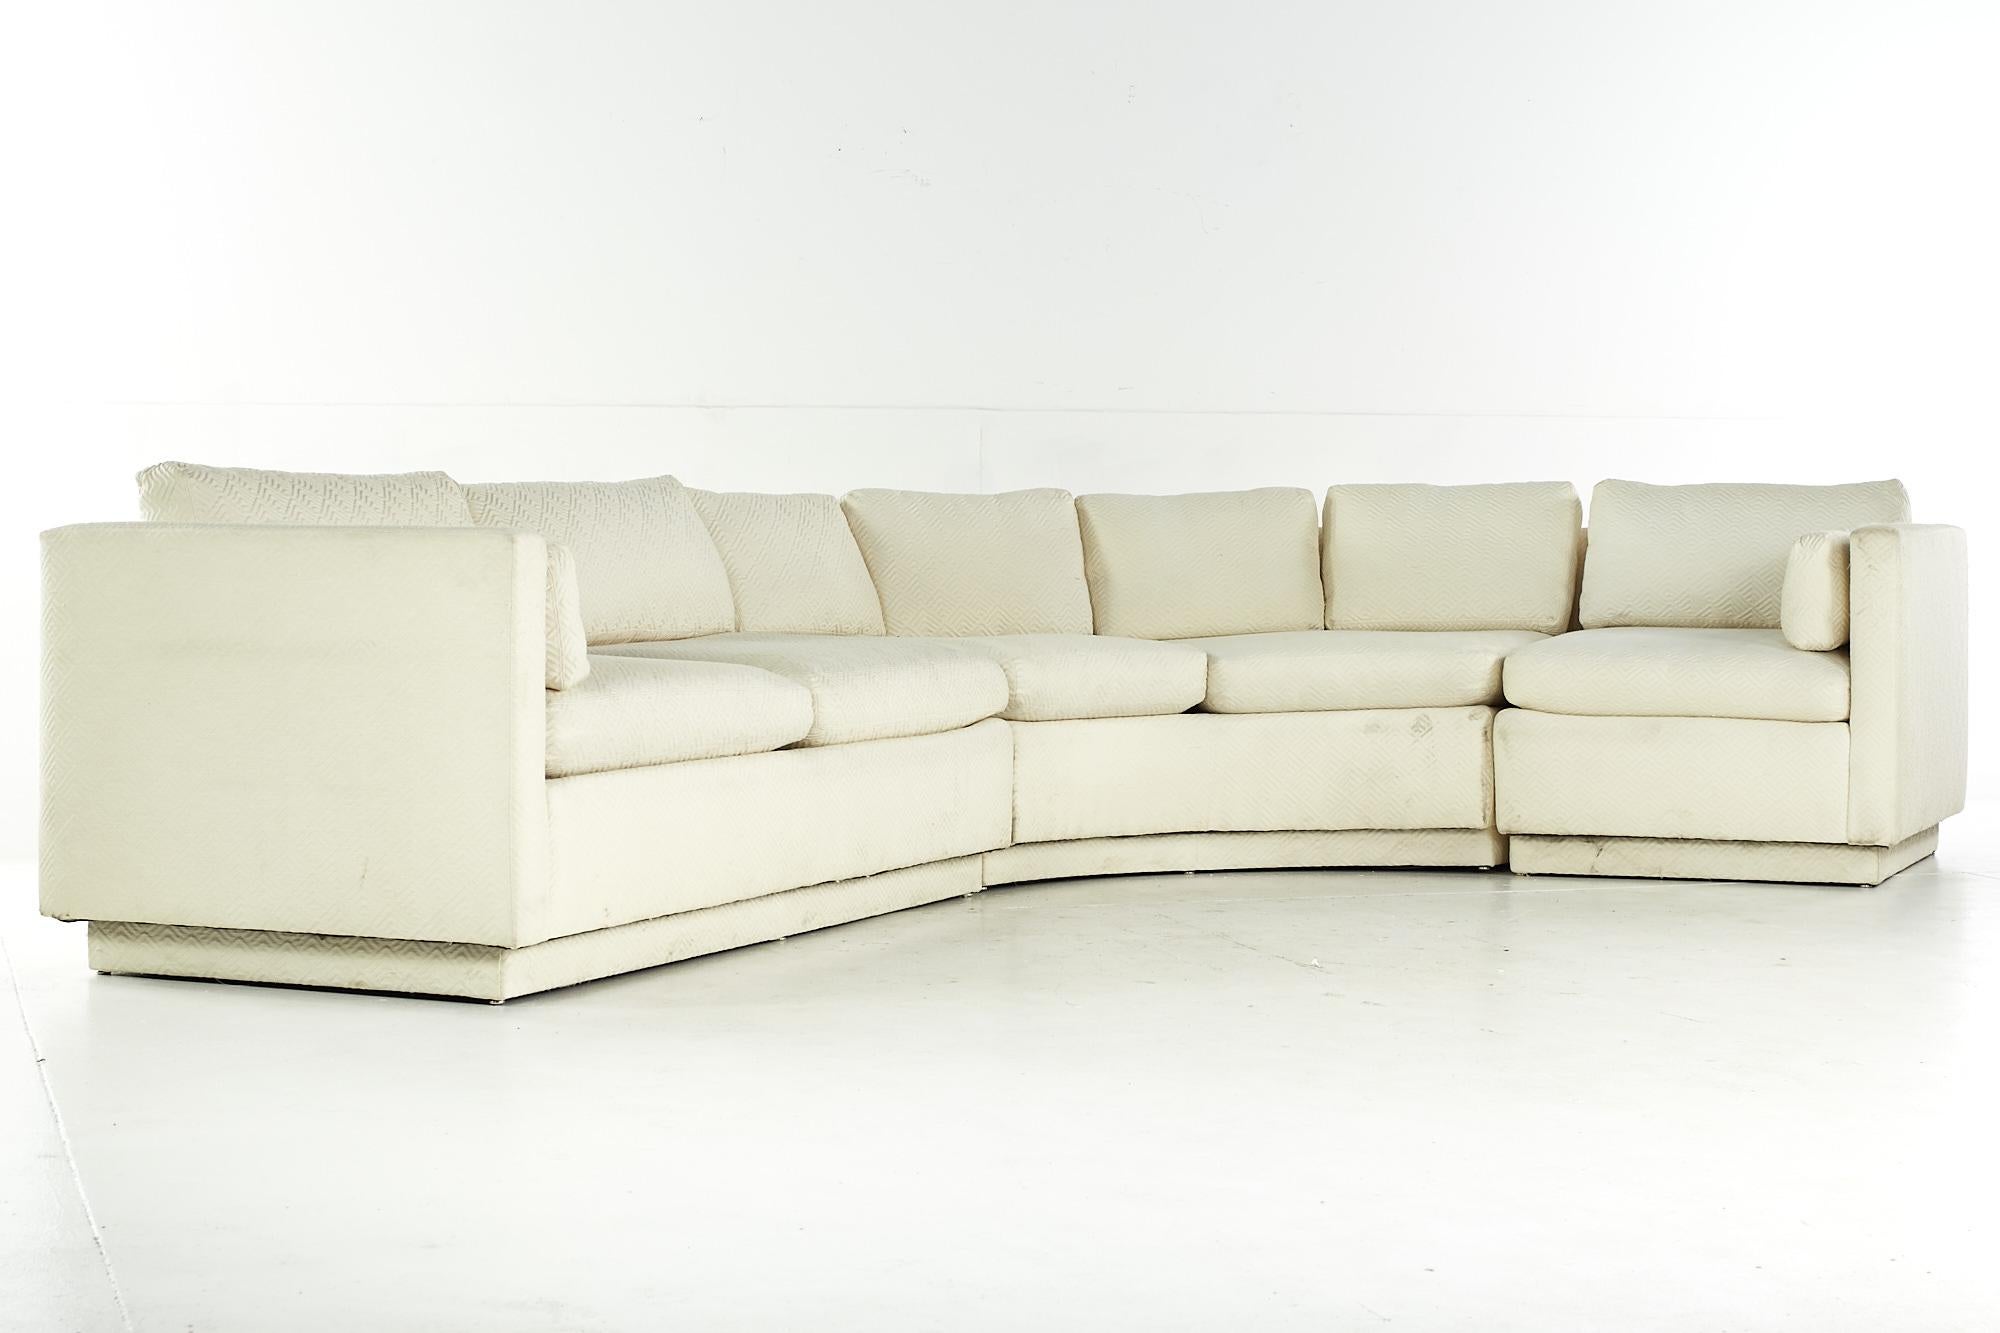 Directional midcentury sectional sofa.

Dieses Sofa misst: 125 breit x 90 tief x 31 Zoll hoch, mit einer Sitzhöhe von 18 und Armhöhe von 27 Zoll.

Alle Möbelstücke sind in einem so genannten restaurierten Vintage-Zustand zu haben. Das bedeutet,